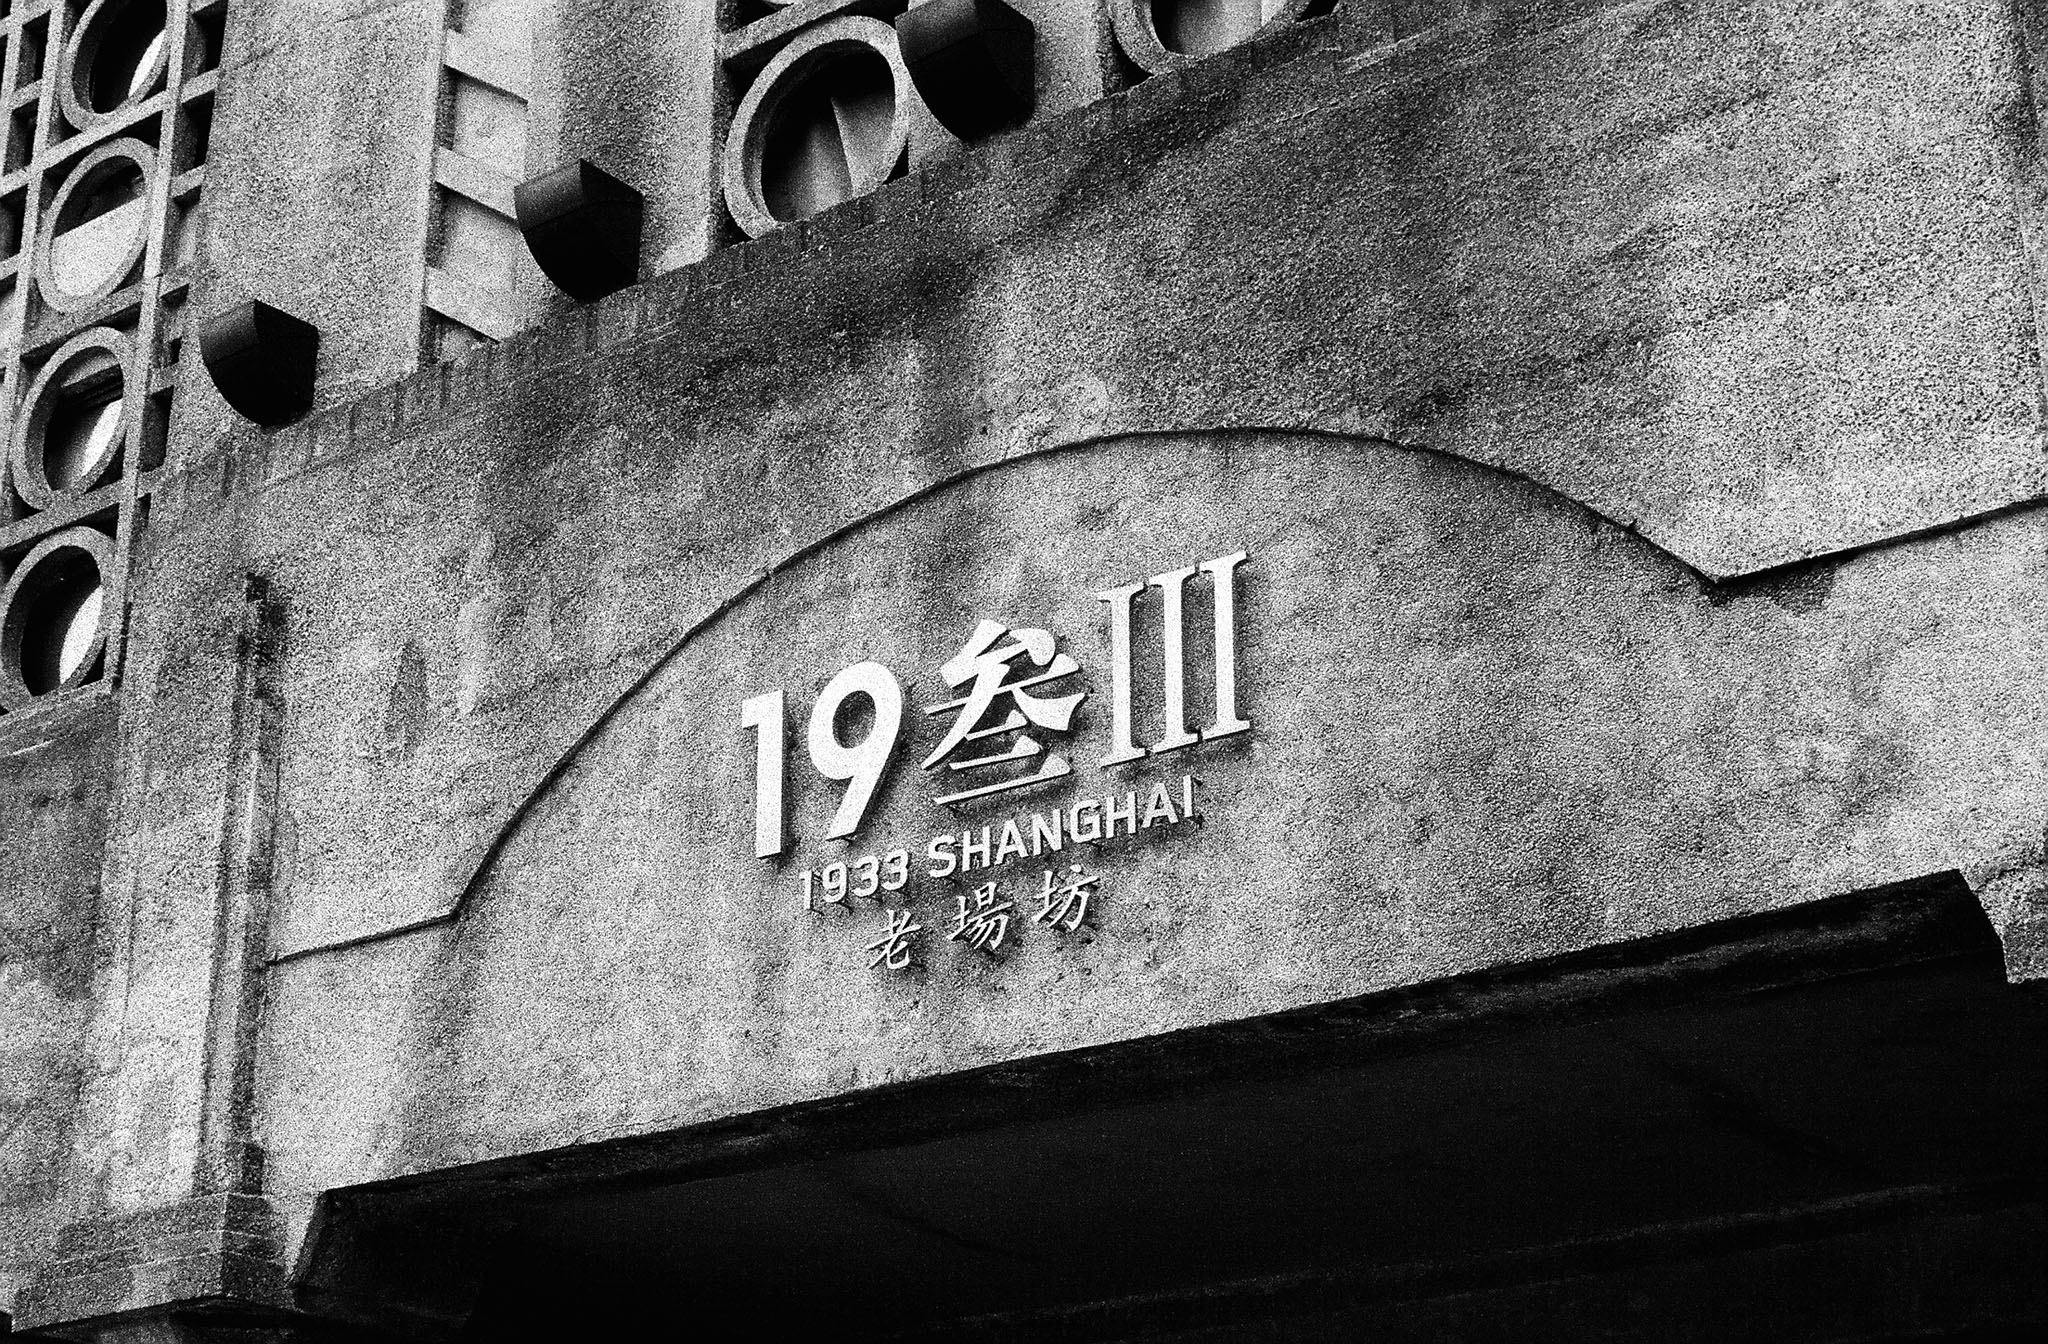 img/1705-shanghai-expedition/tat-tso-1705-shanghai-expedition-07.jpg